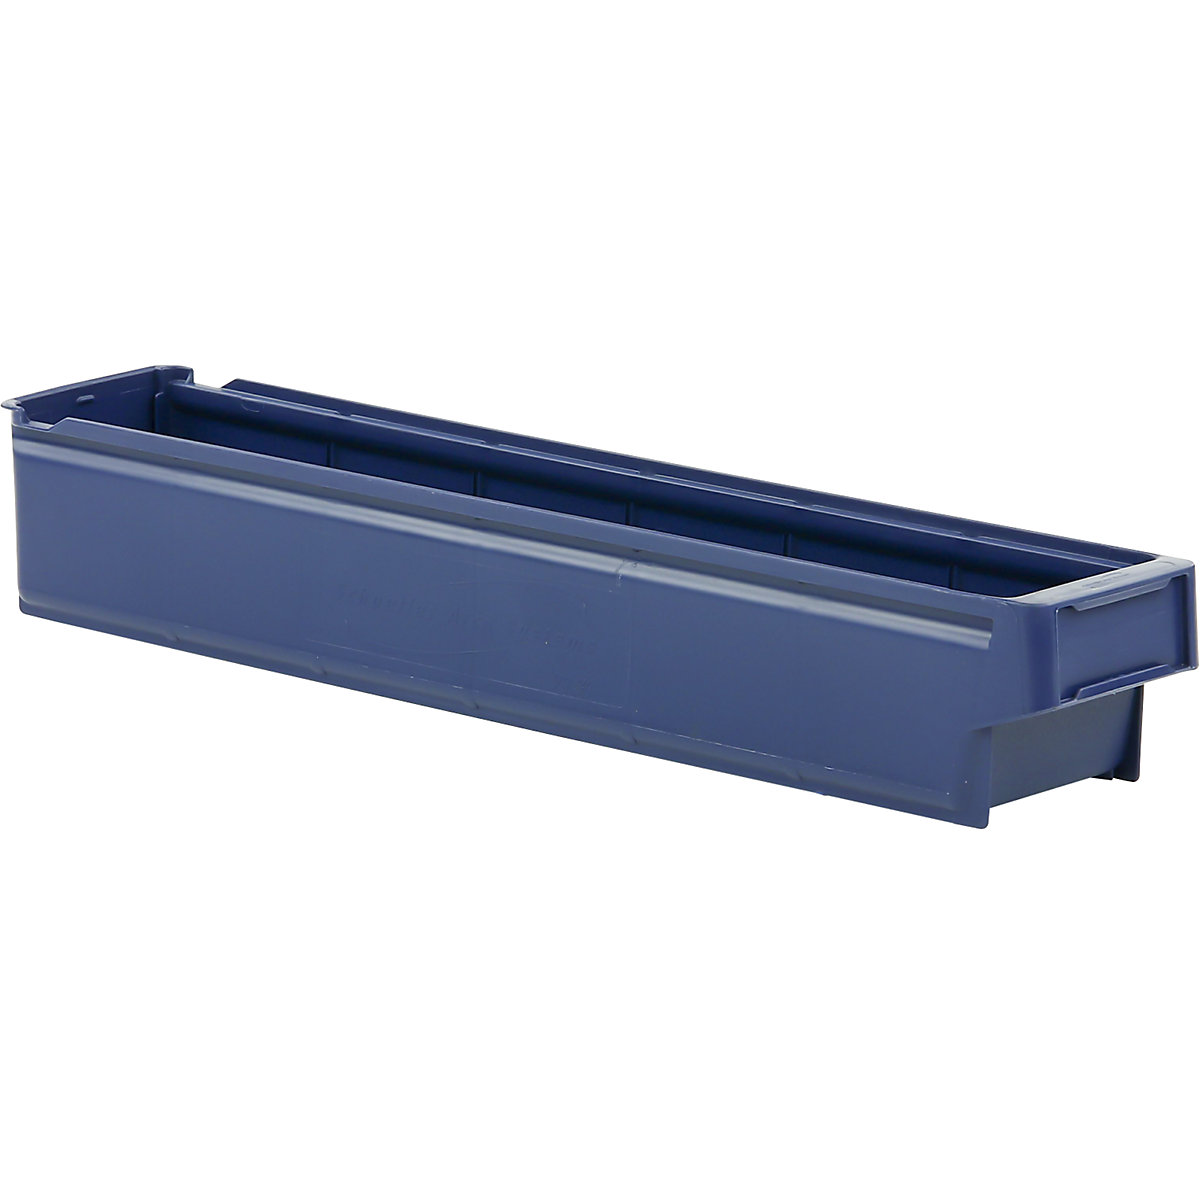 Caixa para estante em polipropileno, azul, CxLxA 600 x 115 x 100 mm, embalagem com 16 unid.-3